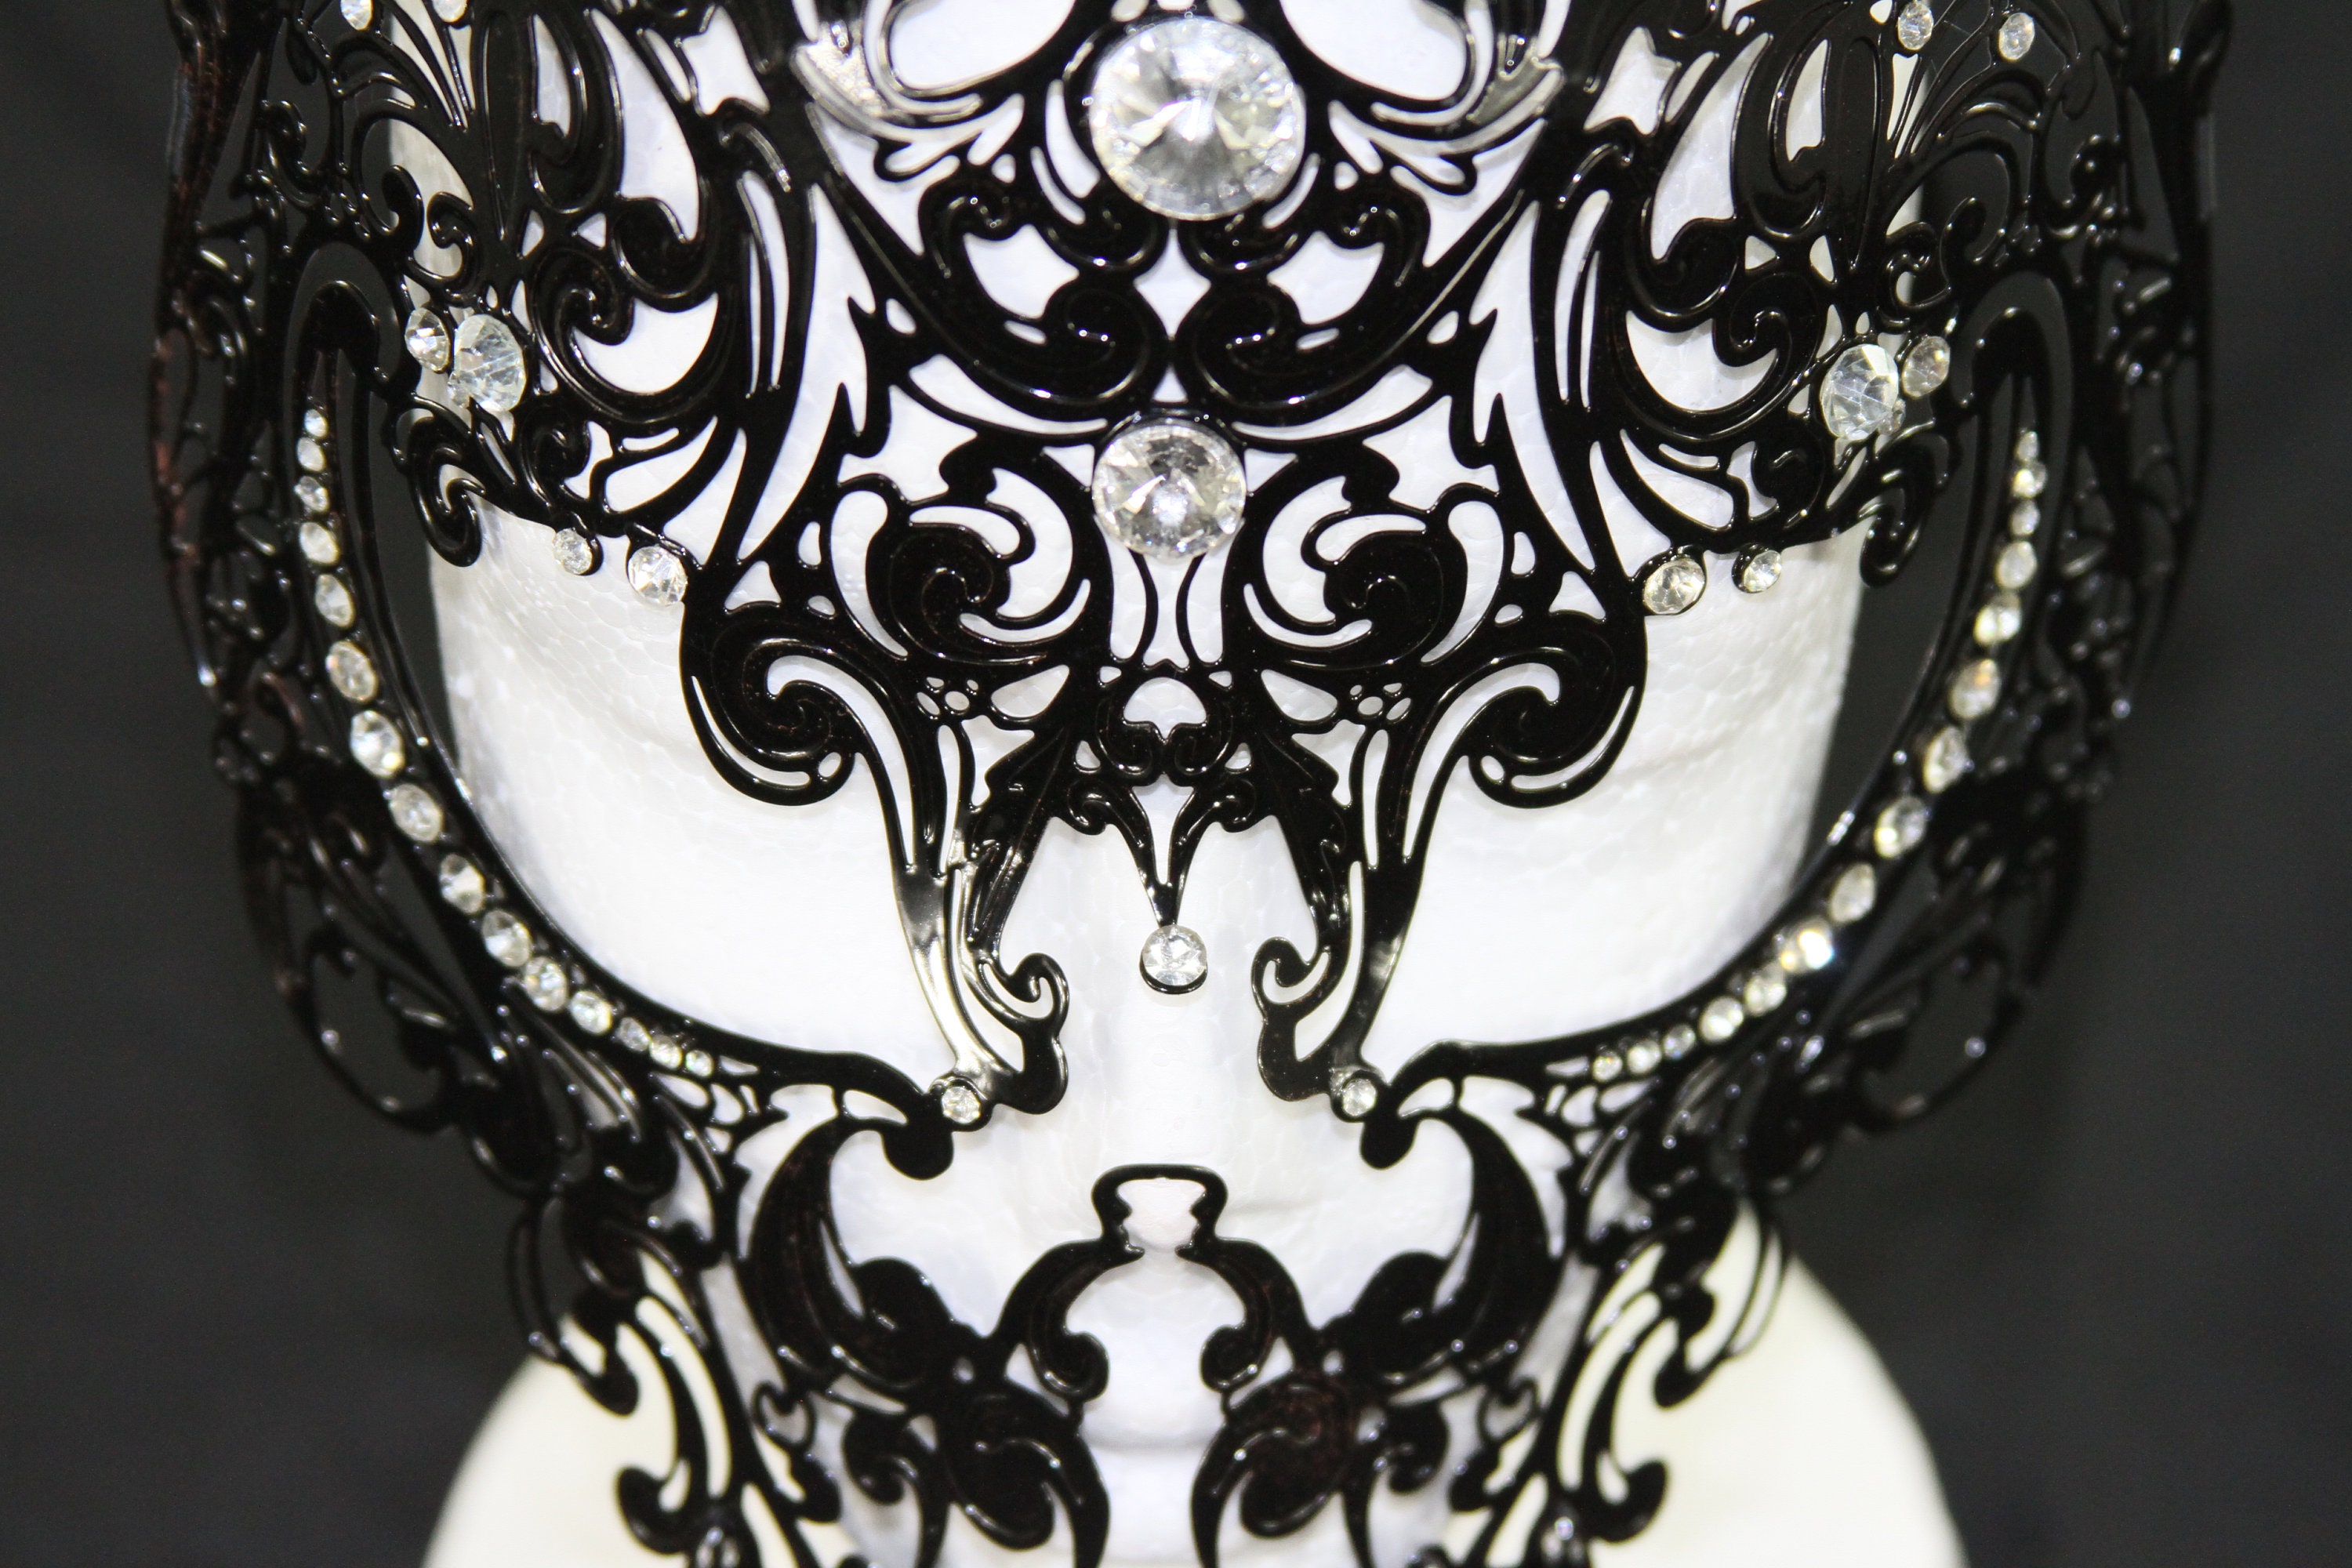 Black Skull Mask/ Laser cut Venetian Masquerade Mask Phantom | Etsy